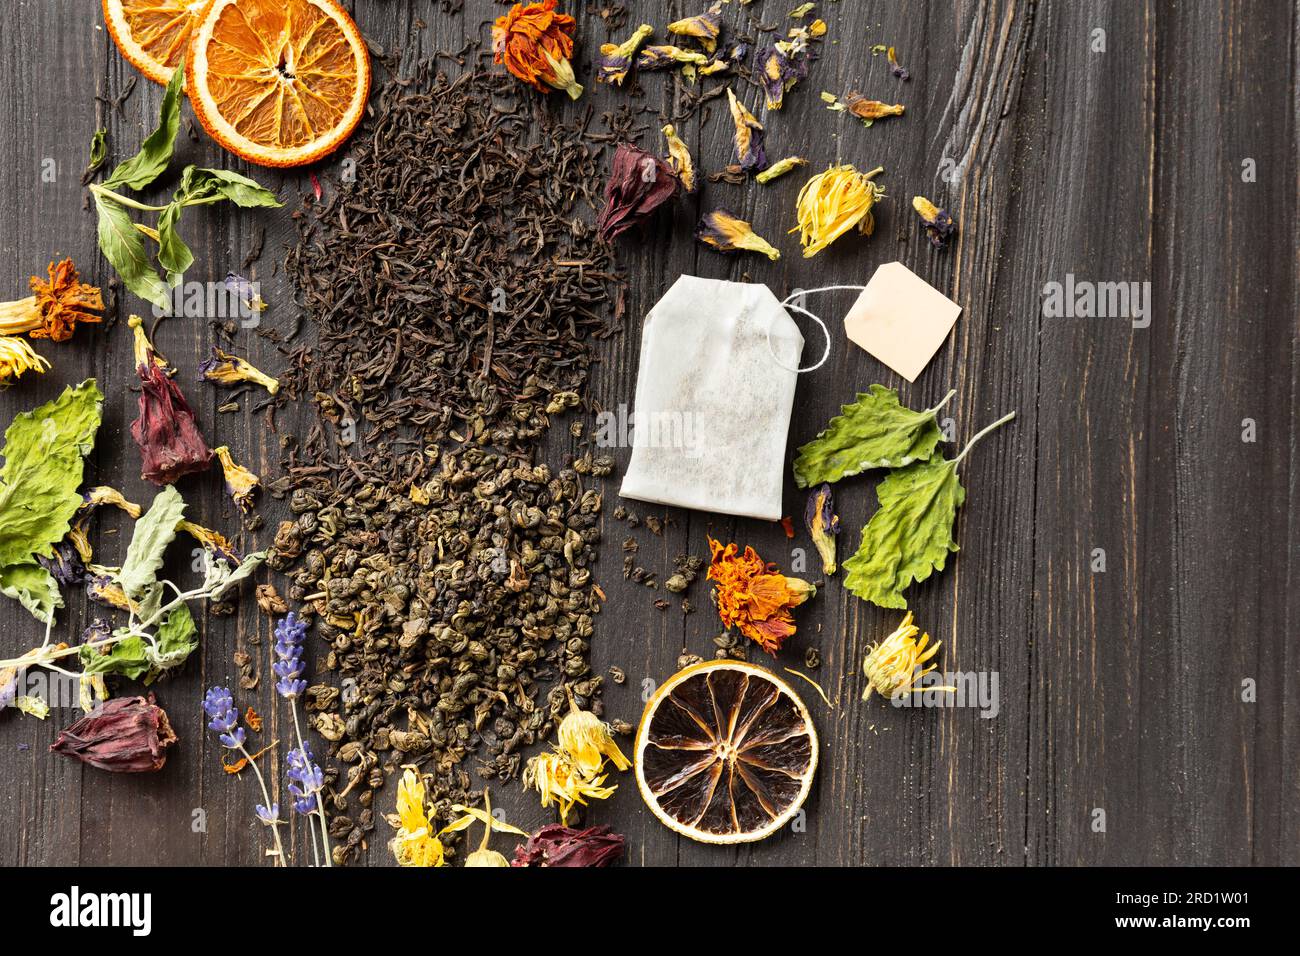 Zusammensetzung von trockenem schwarzen und grünen Tee, Teebeutel, getrockneten Zitrusscheiben und trockenen Hibiskusblumen auf dunklem Holzhintergrund von oben. Stockfoto